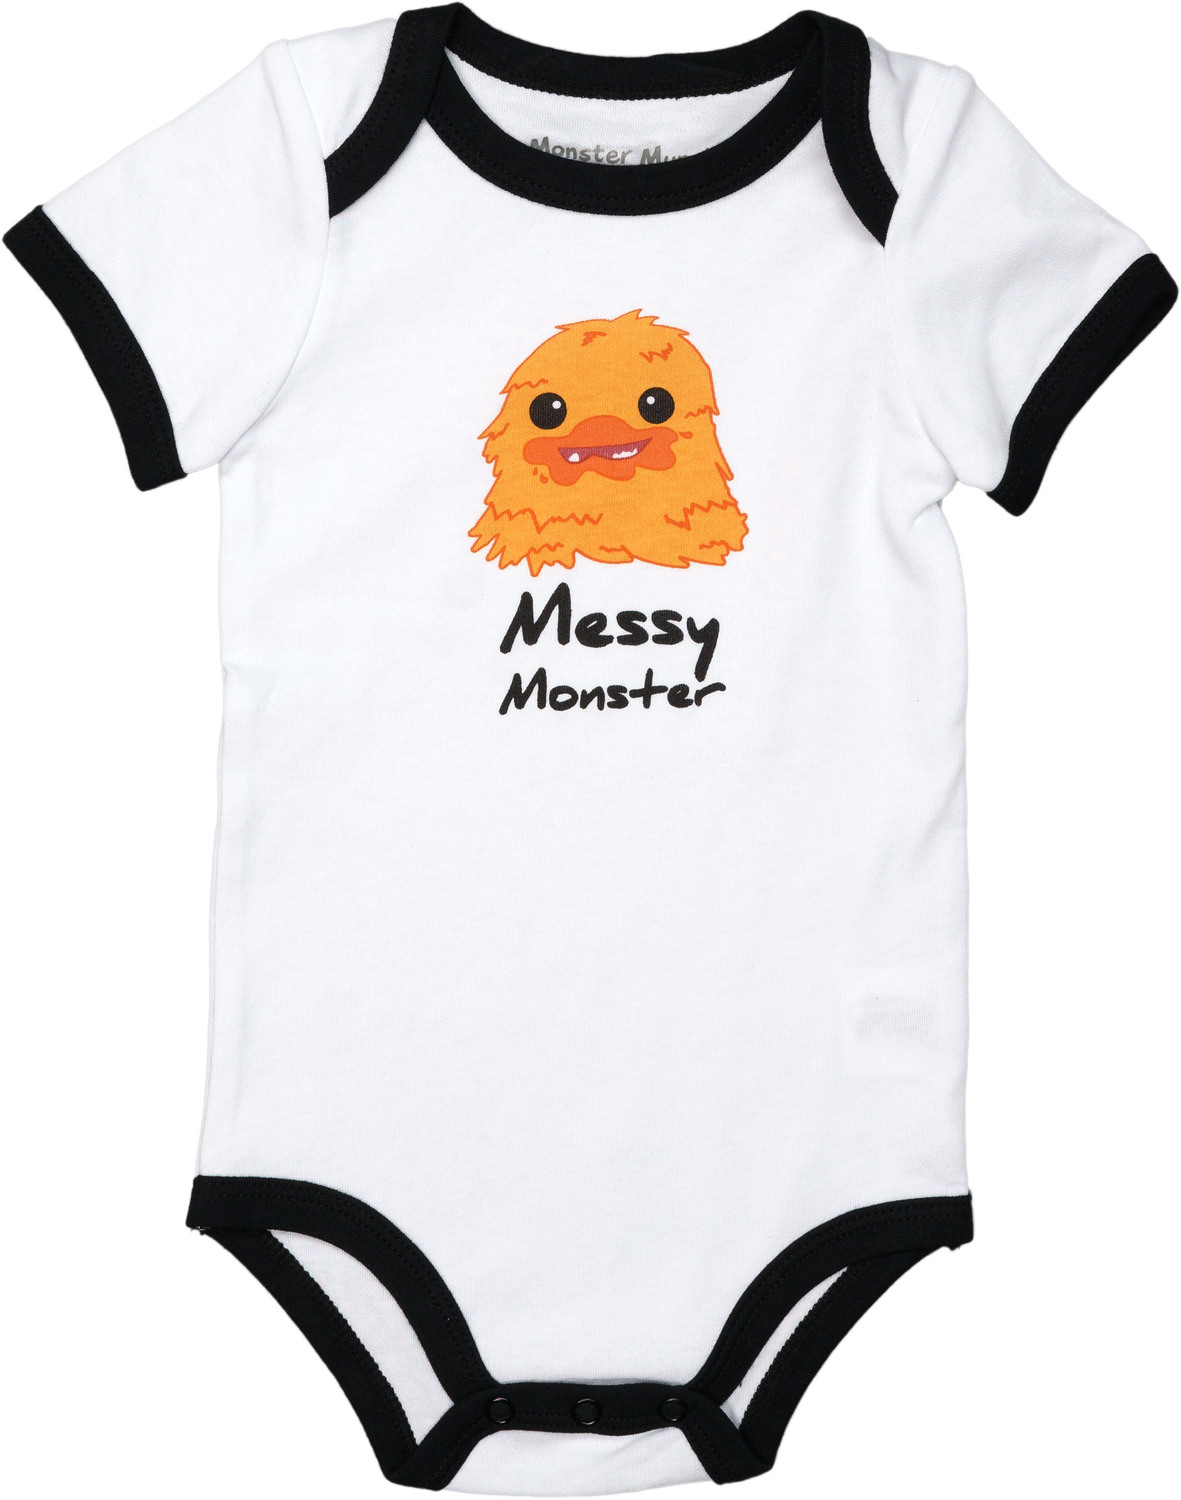 Orange Messy Monster by Monster Munchkins - Orange Messy Monster - 6-12 Months
Bodysuit